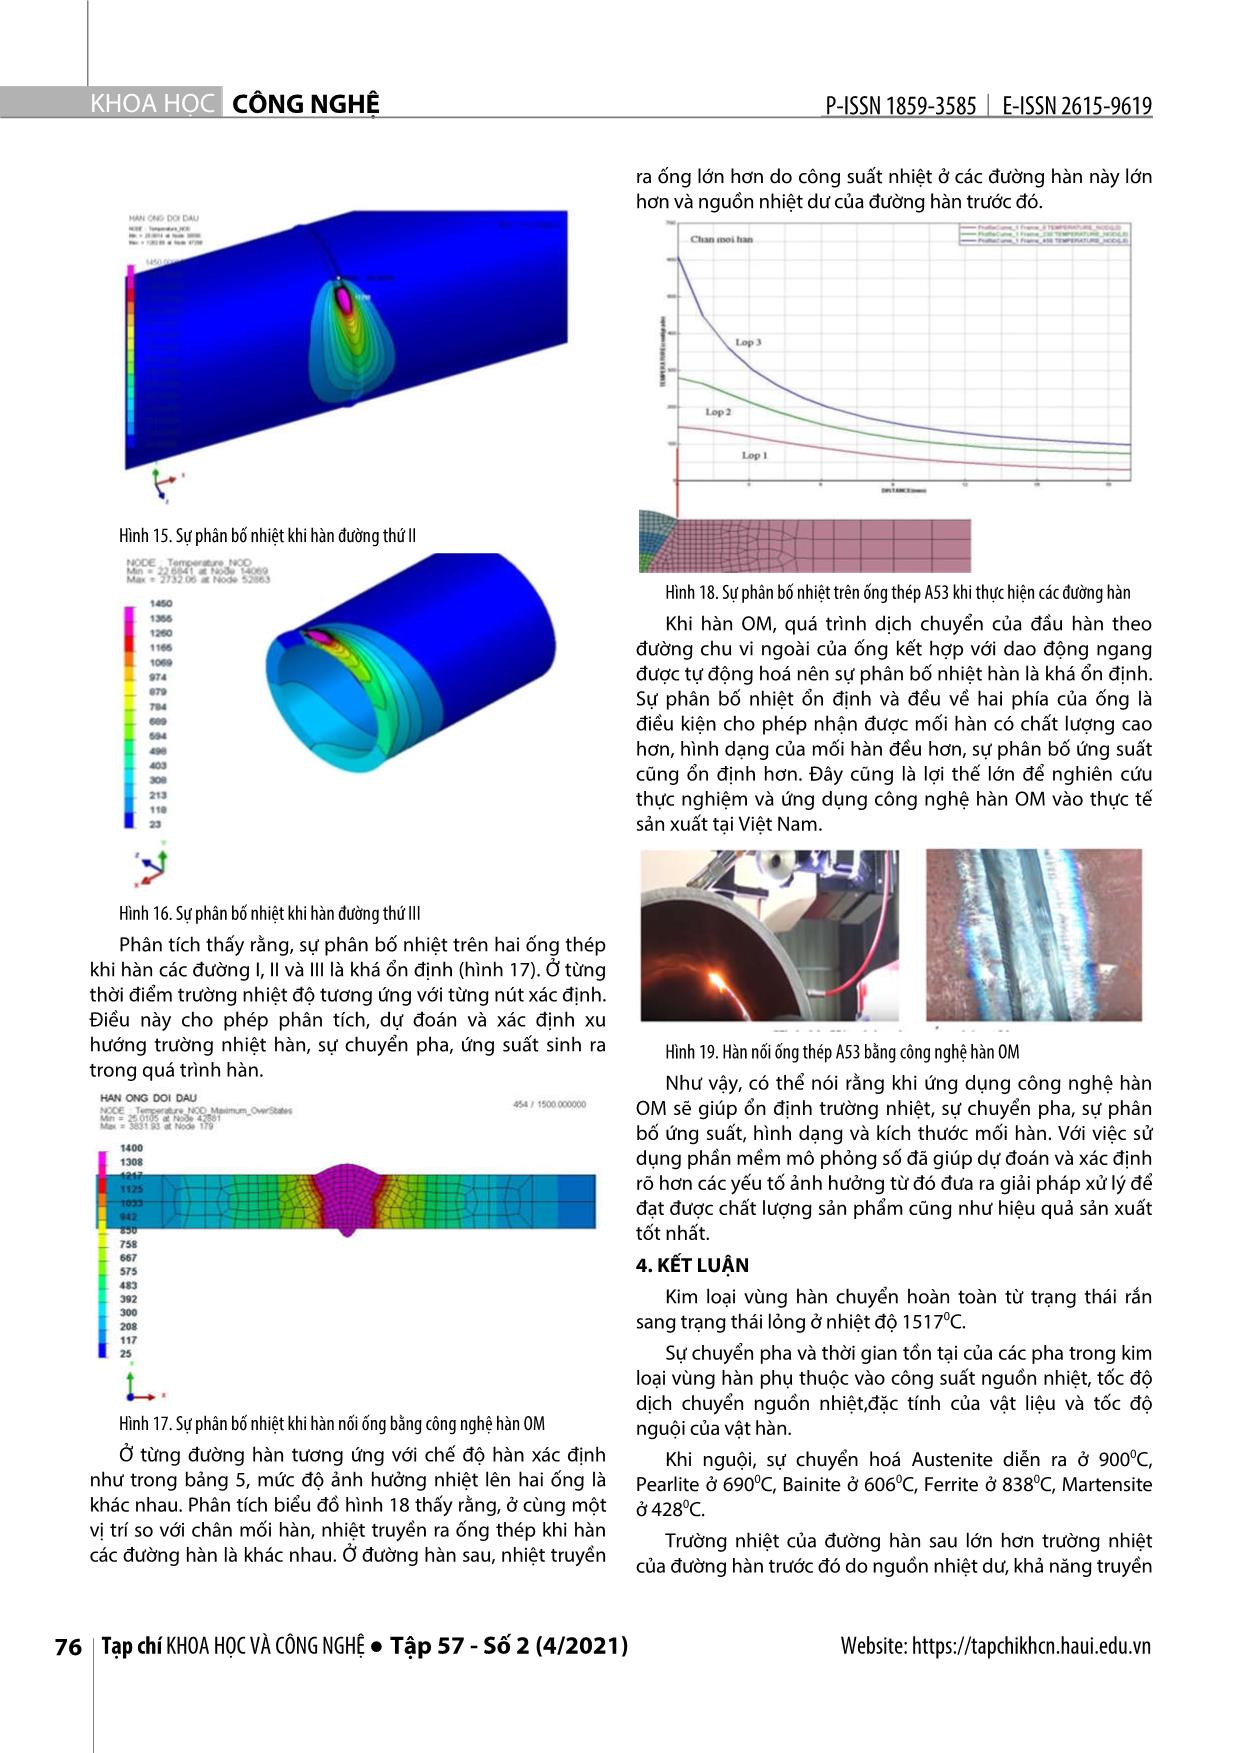 Phân tích sự chuyển pha và trường nhiệt khi hàn nối ống thép các bon bằng quá trình orbital - mag trang 5